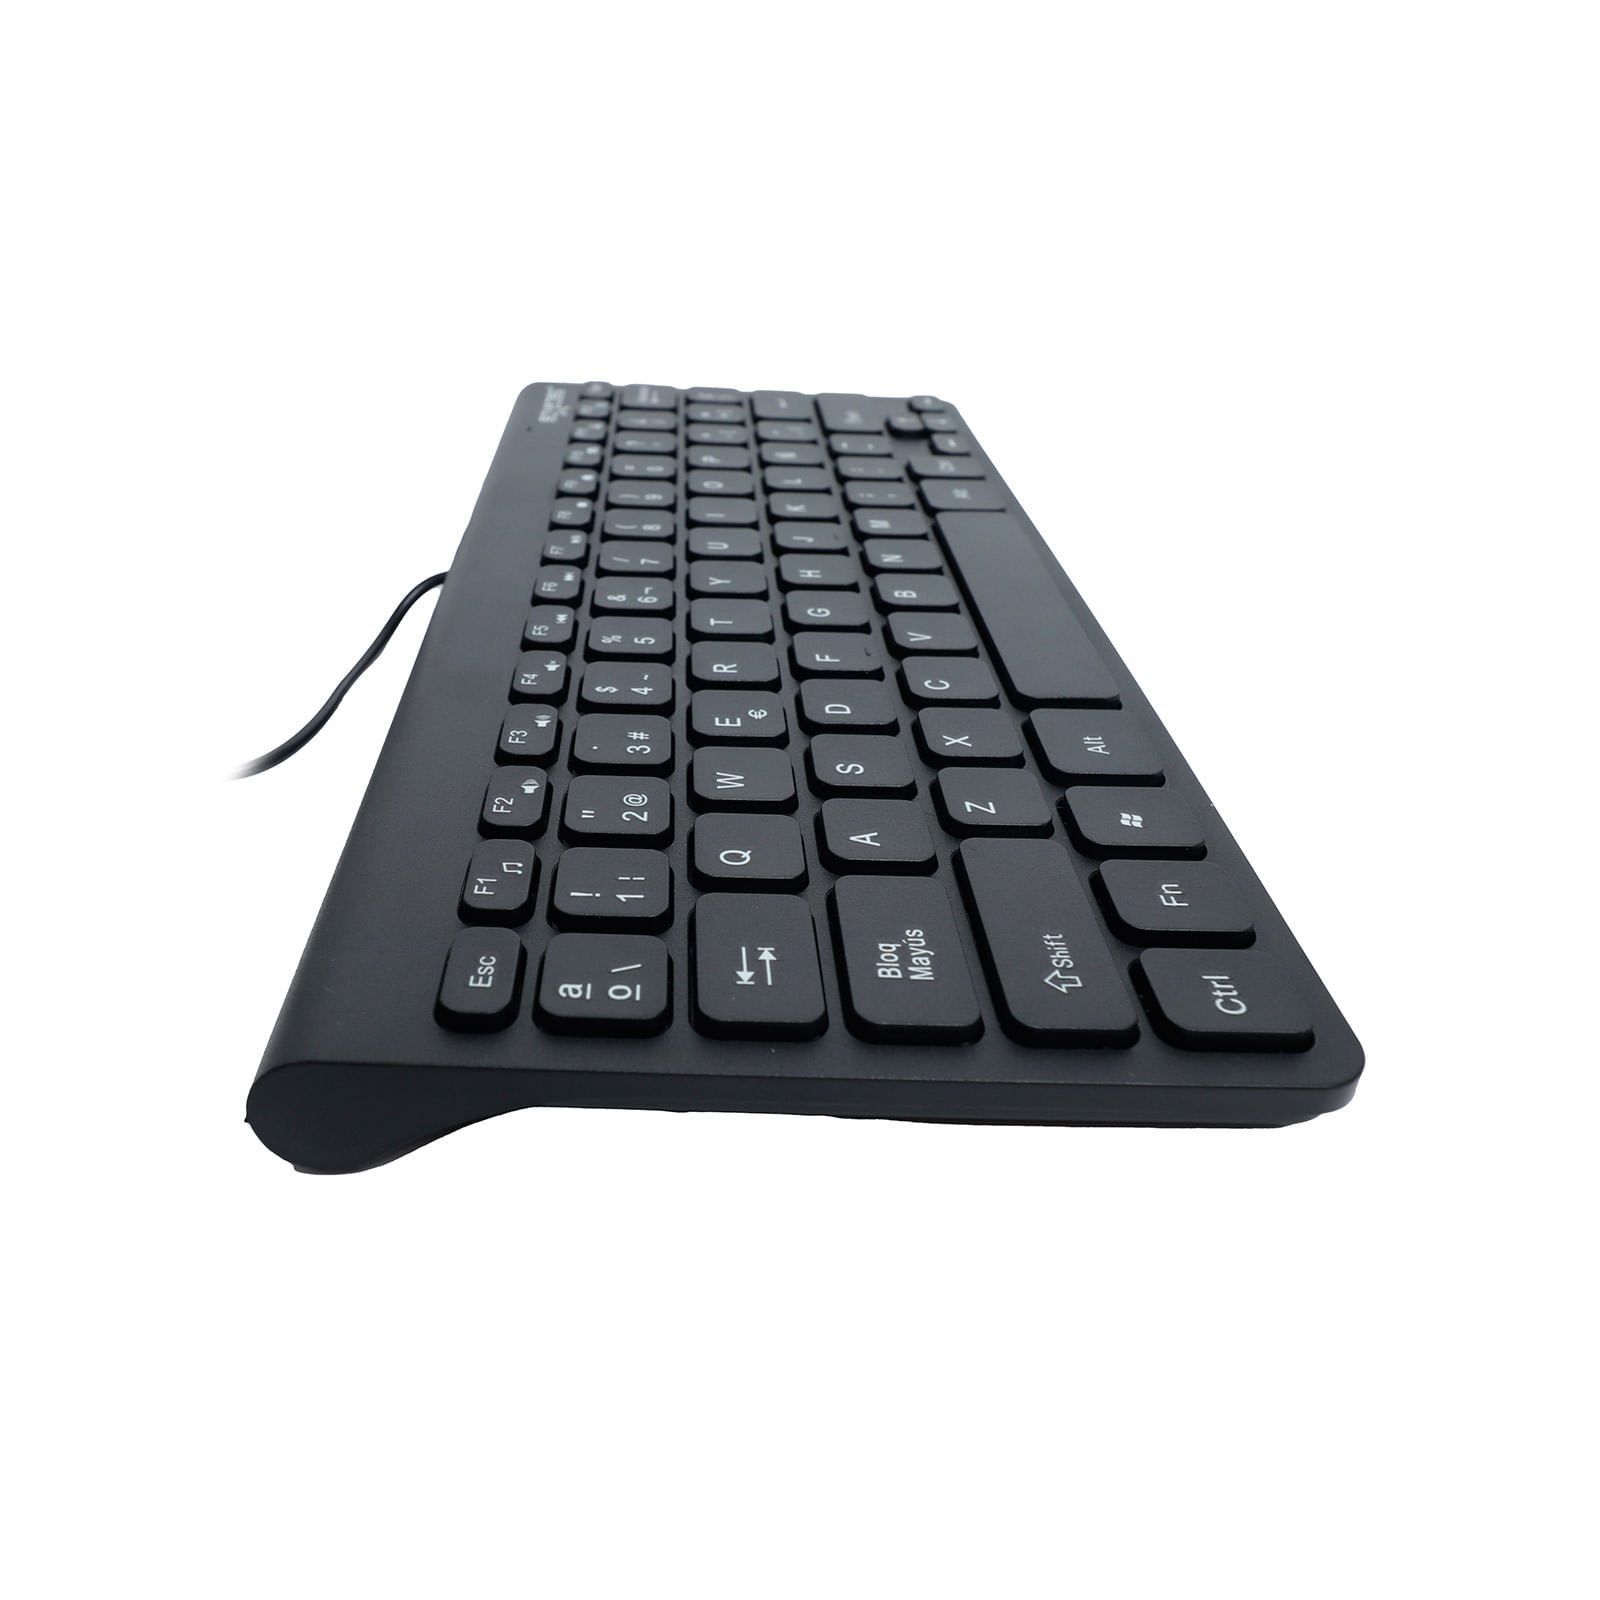 mini teclado usb alambrico 78 teclas Español - ELE-GATE